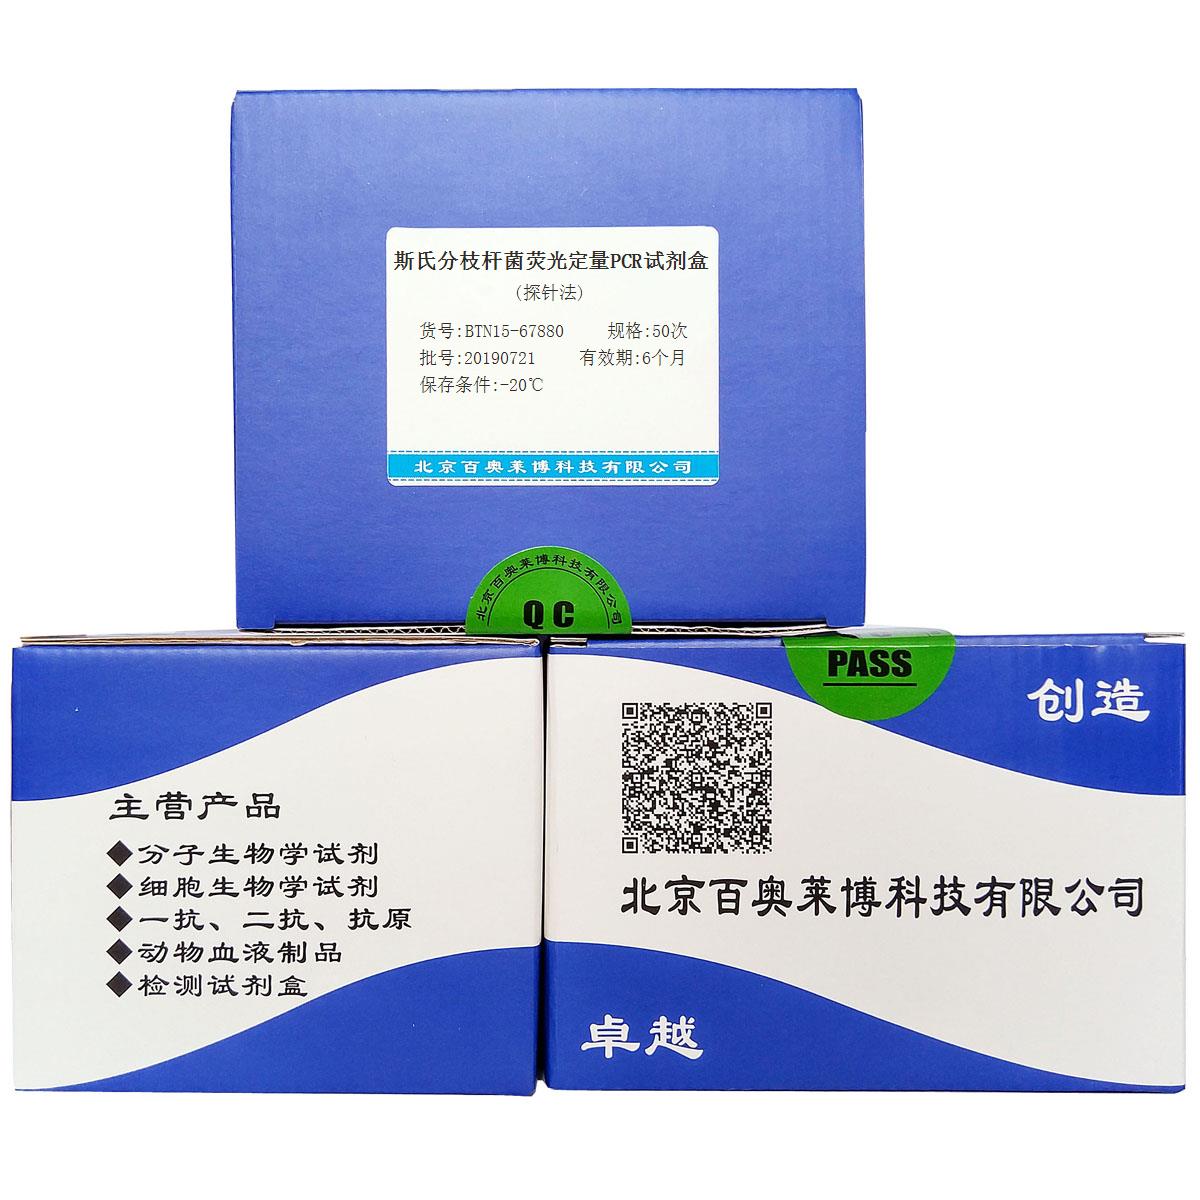 斯氏分枝杆菌荧光定量PCR试剂盒(探针法)